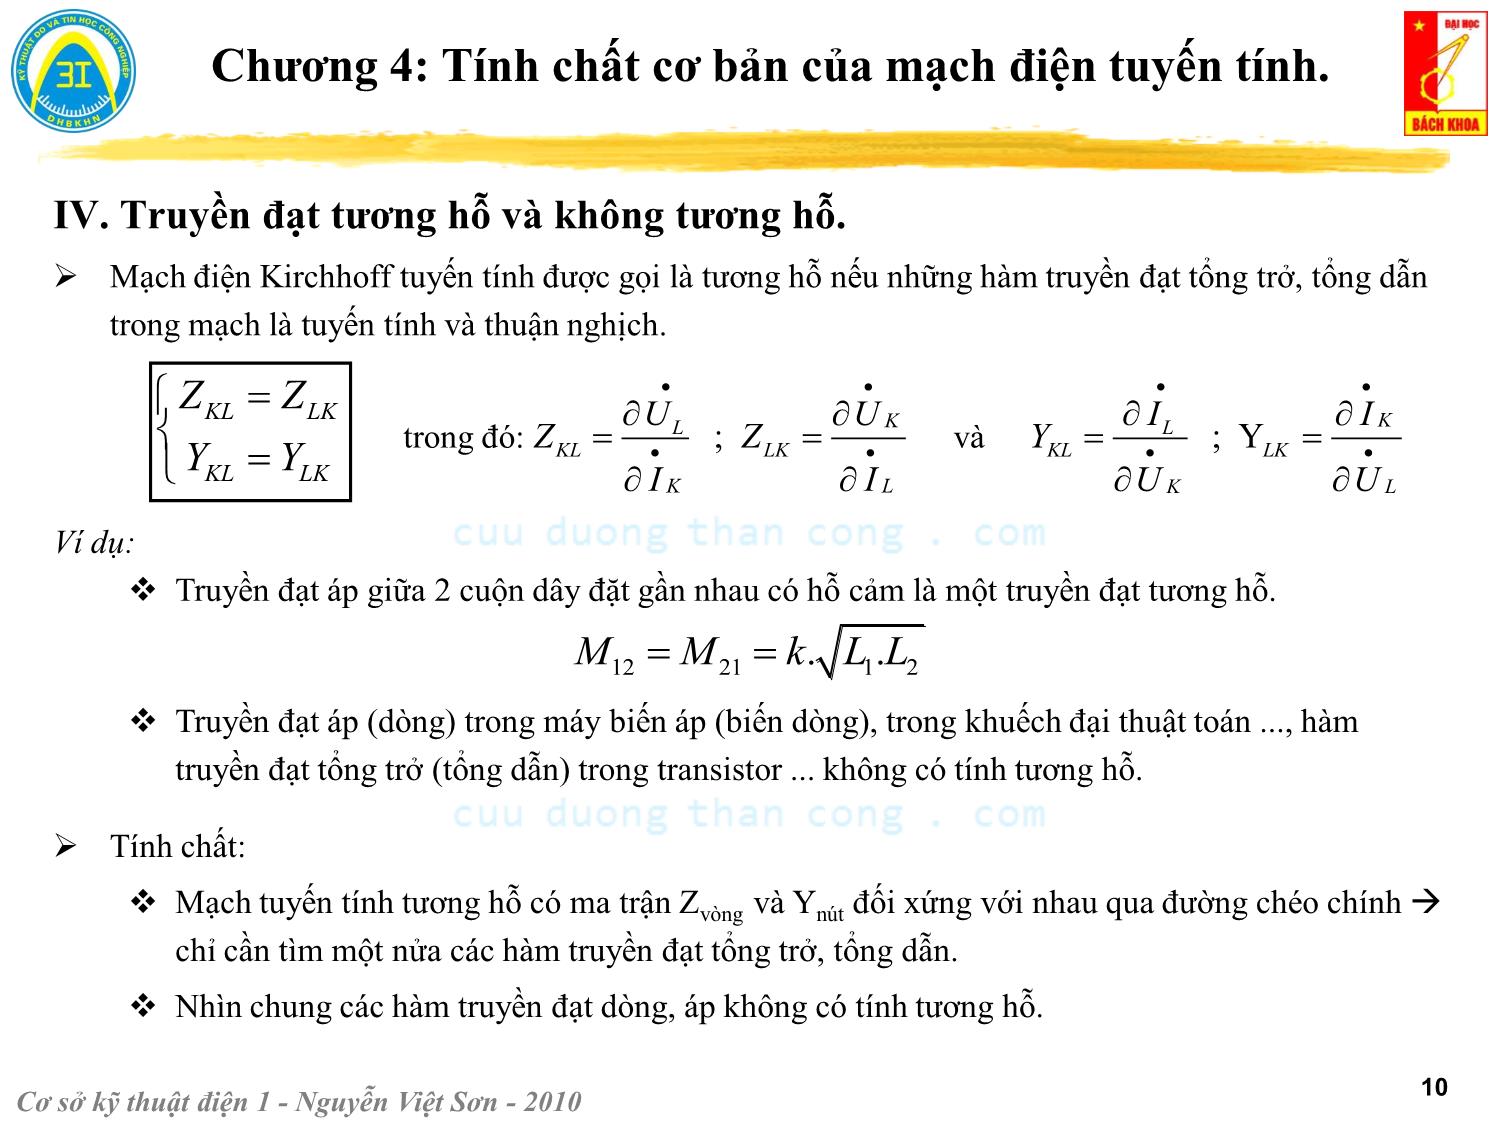 Bài giảng Kỹ thuật điện 1 - Chương 4: Tính chất cơ bản của mạch điện tuyến tính - Nguyễn Việt Sơn trang 10